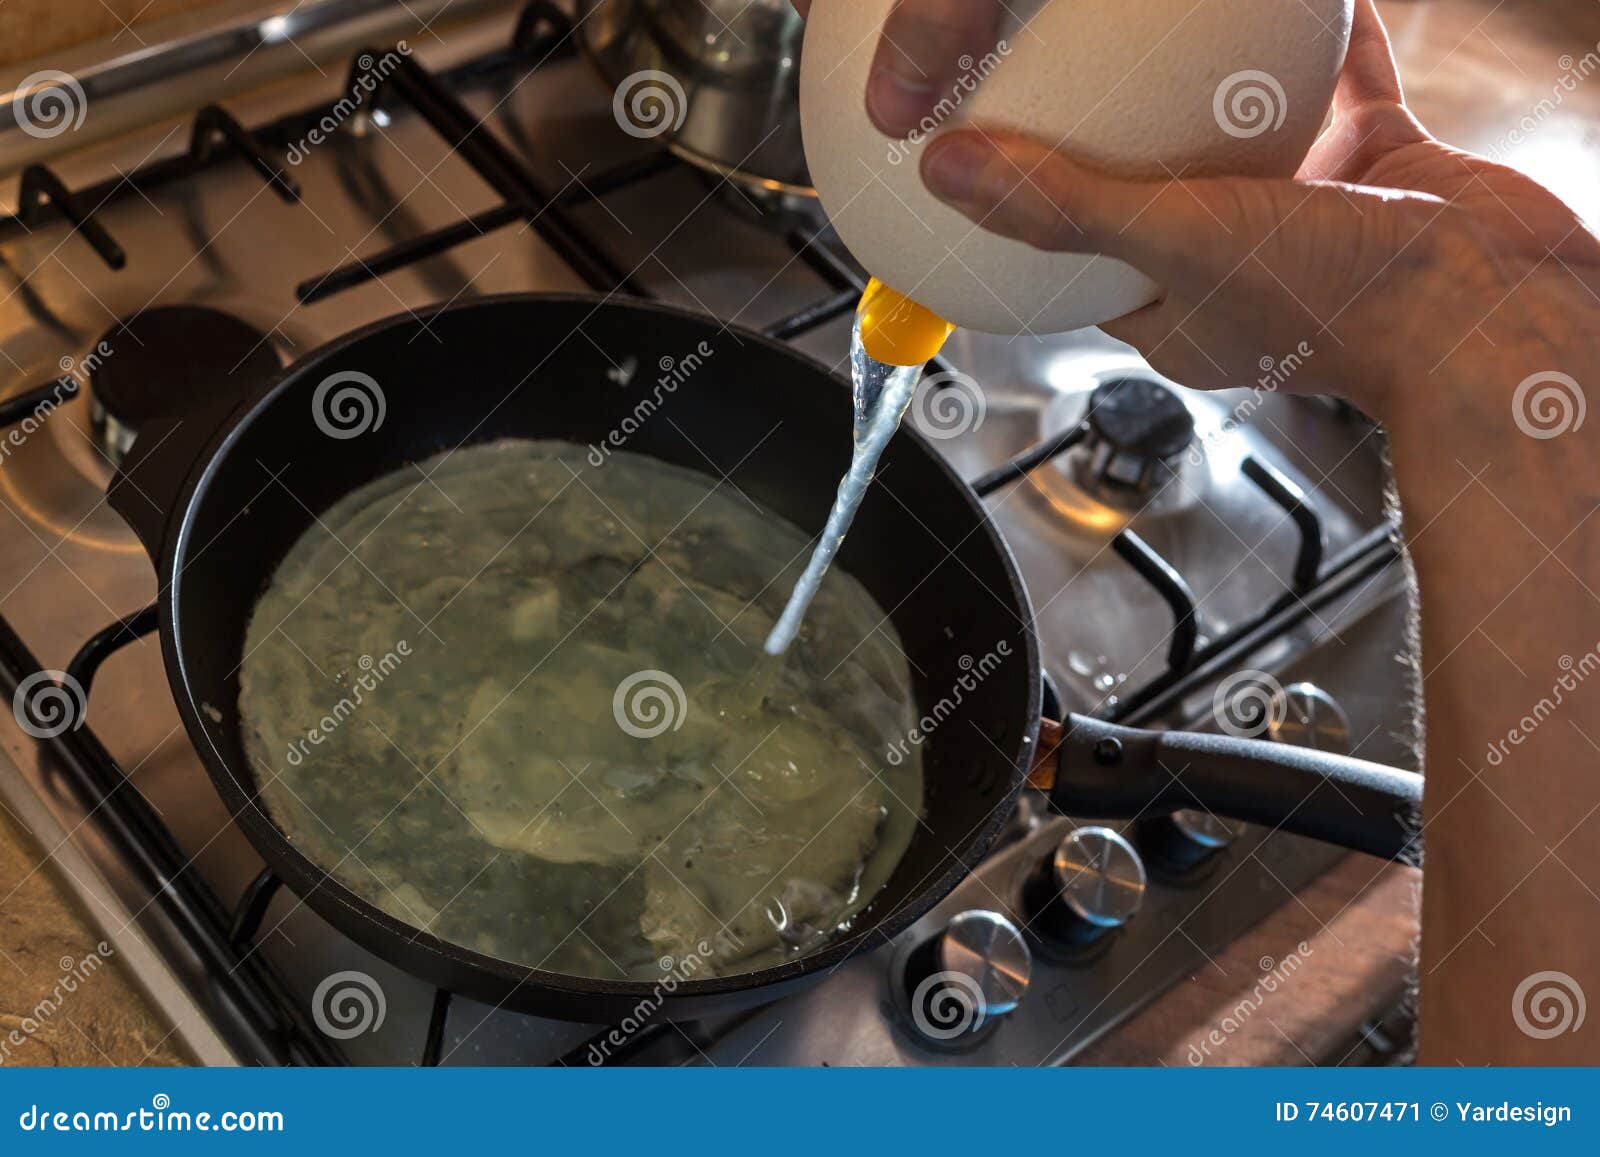 Frying an OSTRICH egg : r/pics